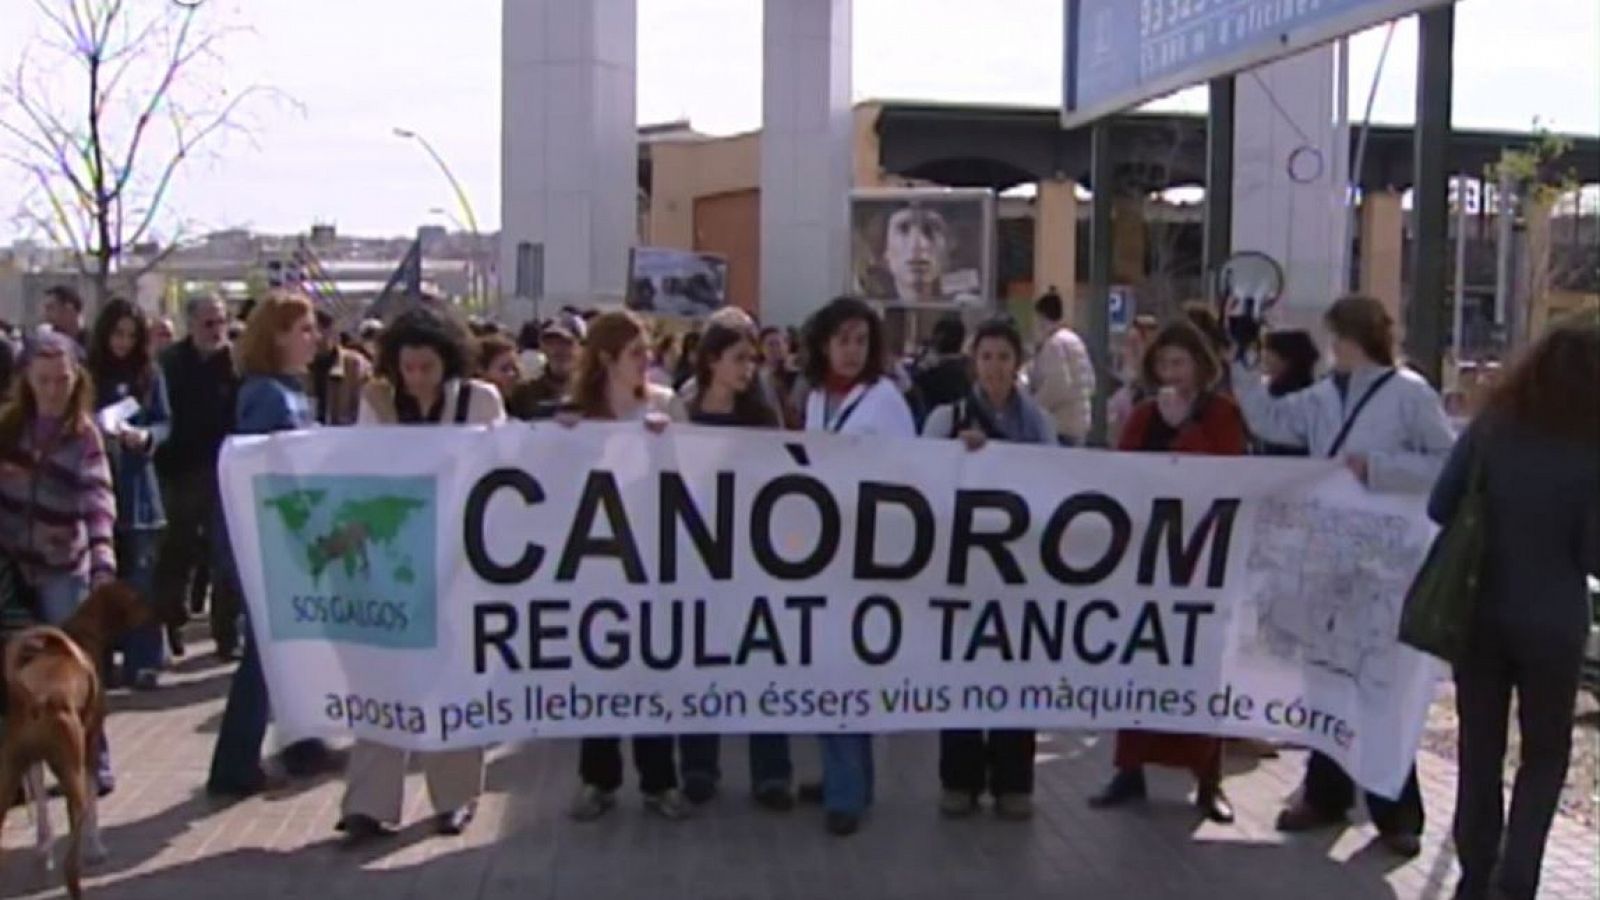 Manifestació pel maltracte als llebrers del canòdrom - arxiu